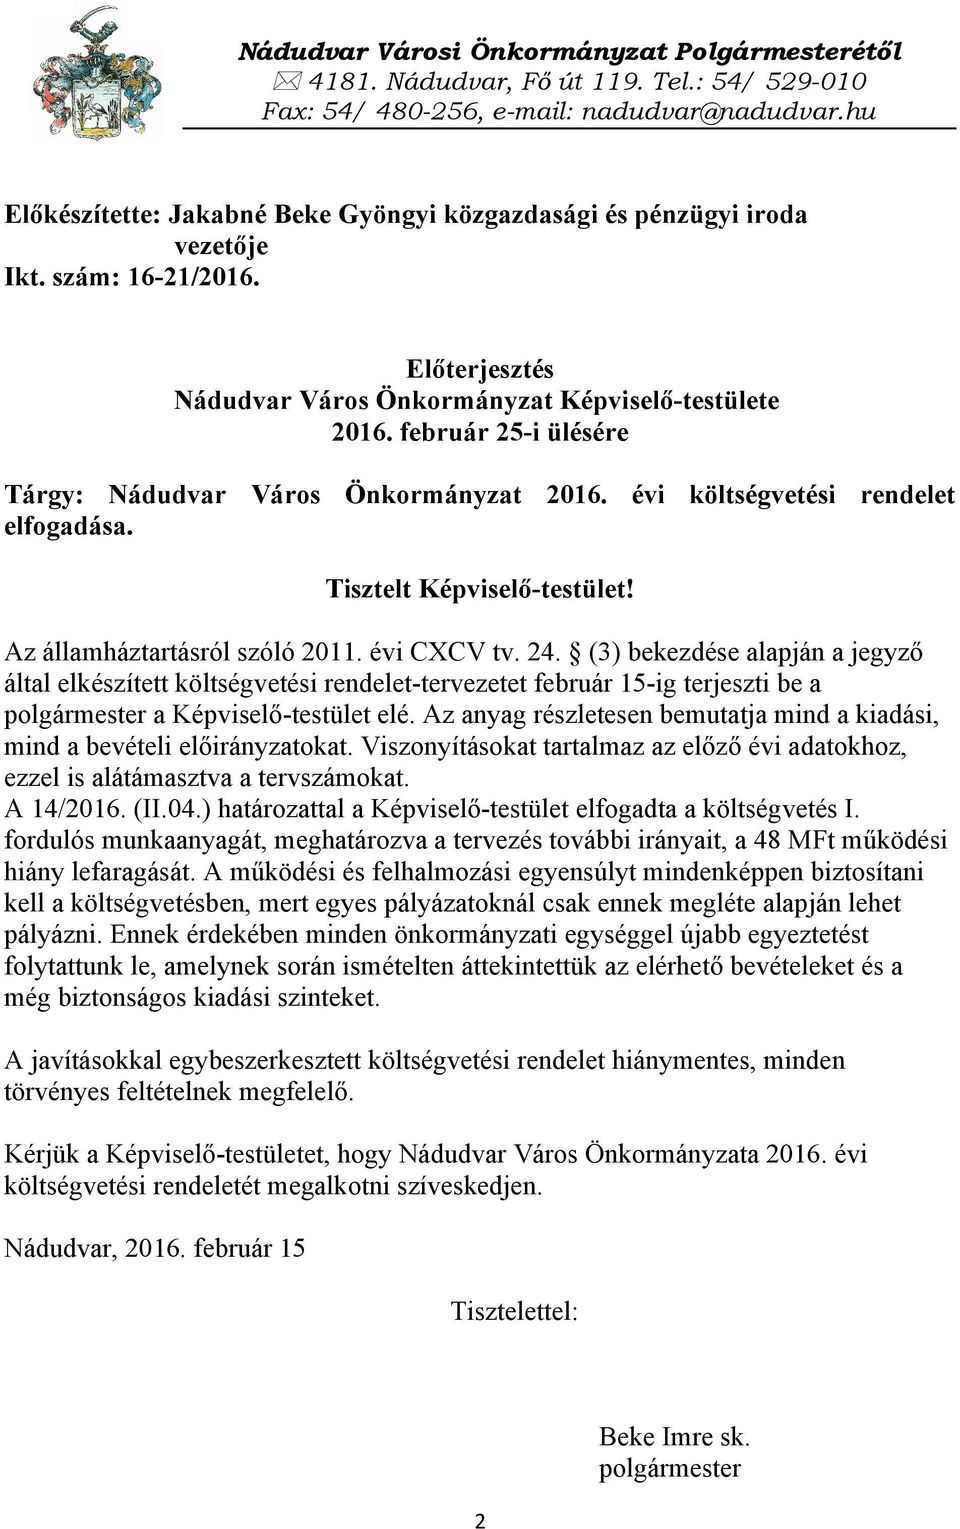 február 25-i ülésére Tárgy: Nádudvar Város Önkormányzat 2016. évi költségvetési rendelet elfogadása. Tisztelt Képviselő-testület! Az államháztartásról szóló 2011. évi CXCV tv. 24.